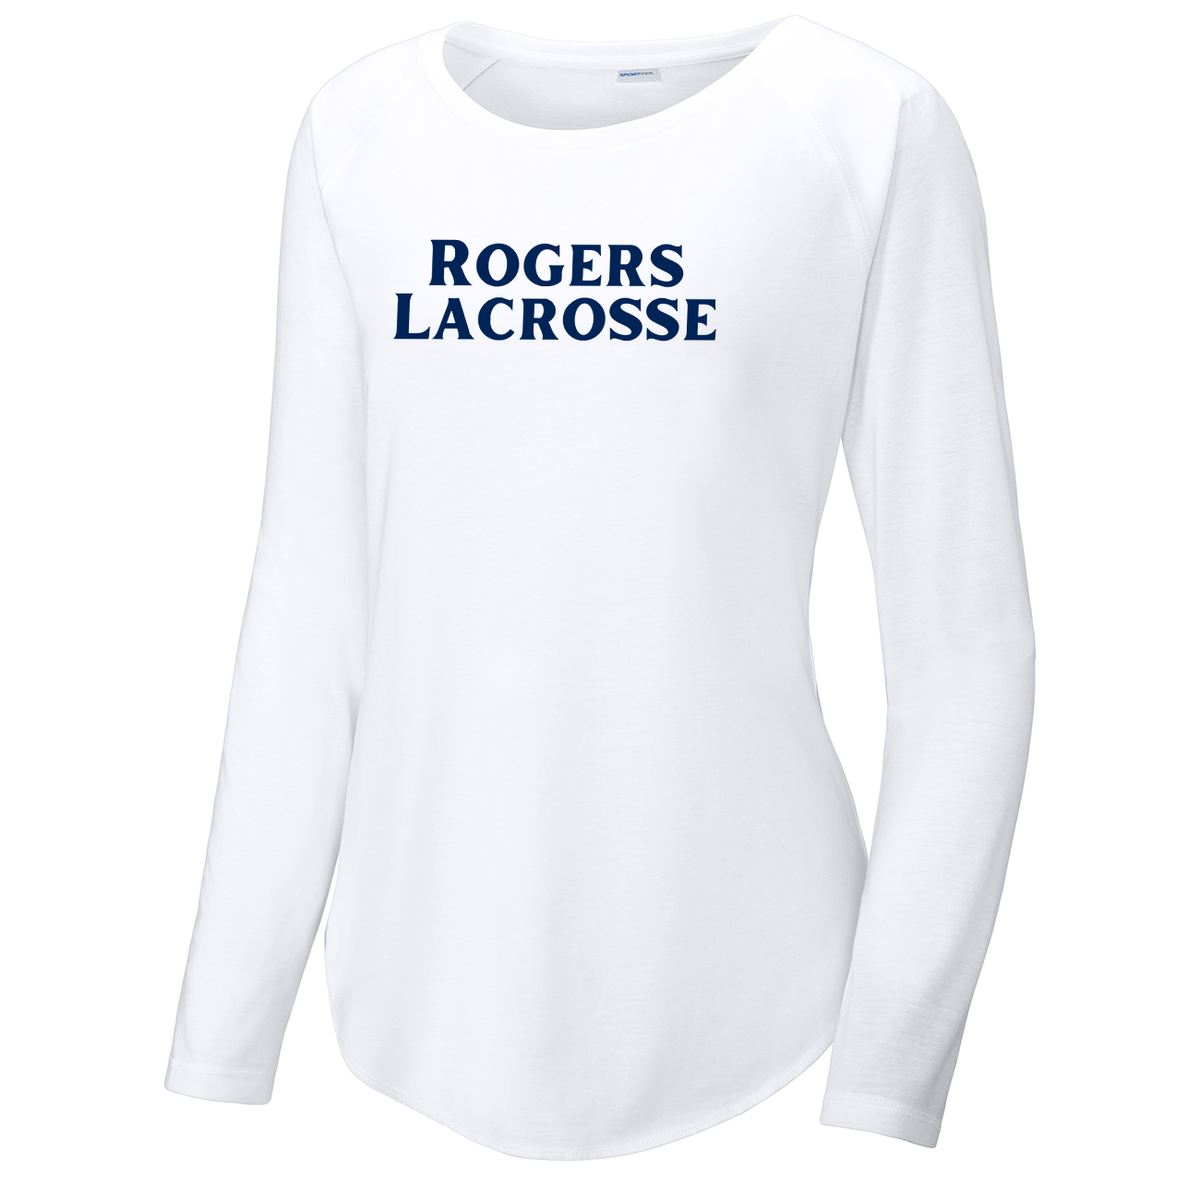 Rogers Lacrosse Women's Raglan Long Sleeve CottonTouch